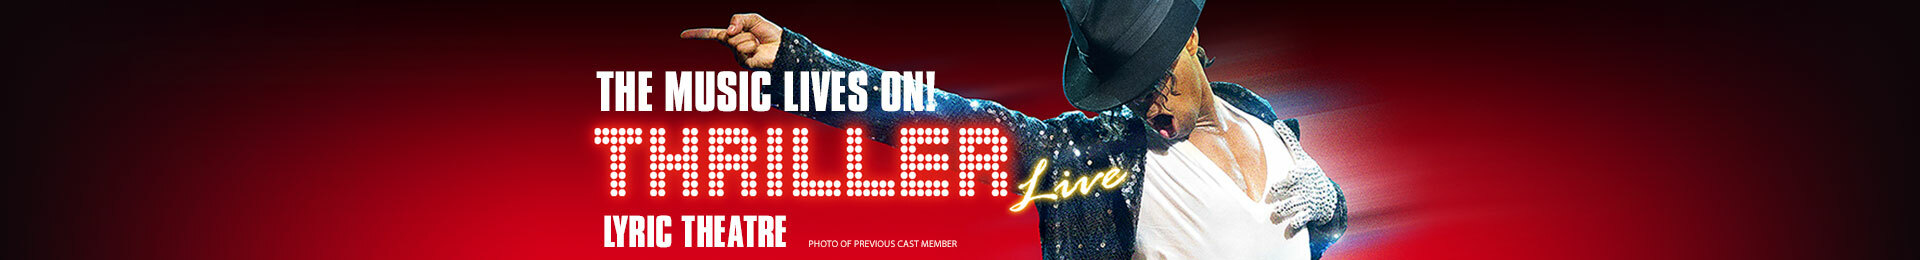 Thriller Live banner image